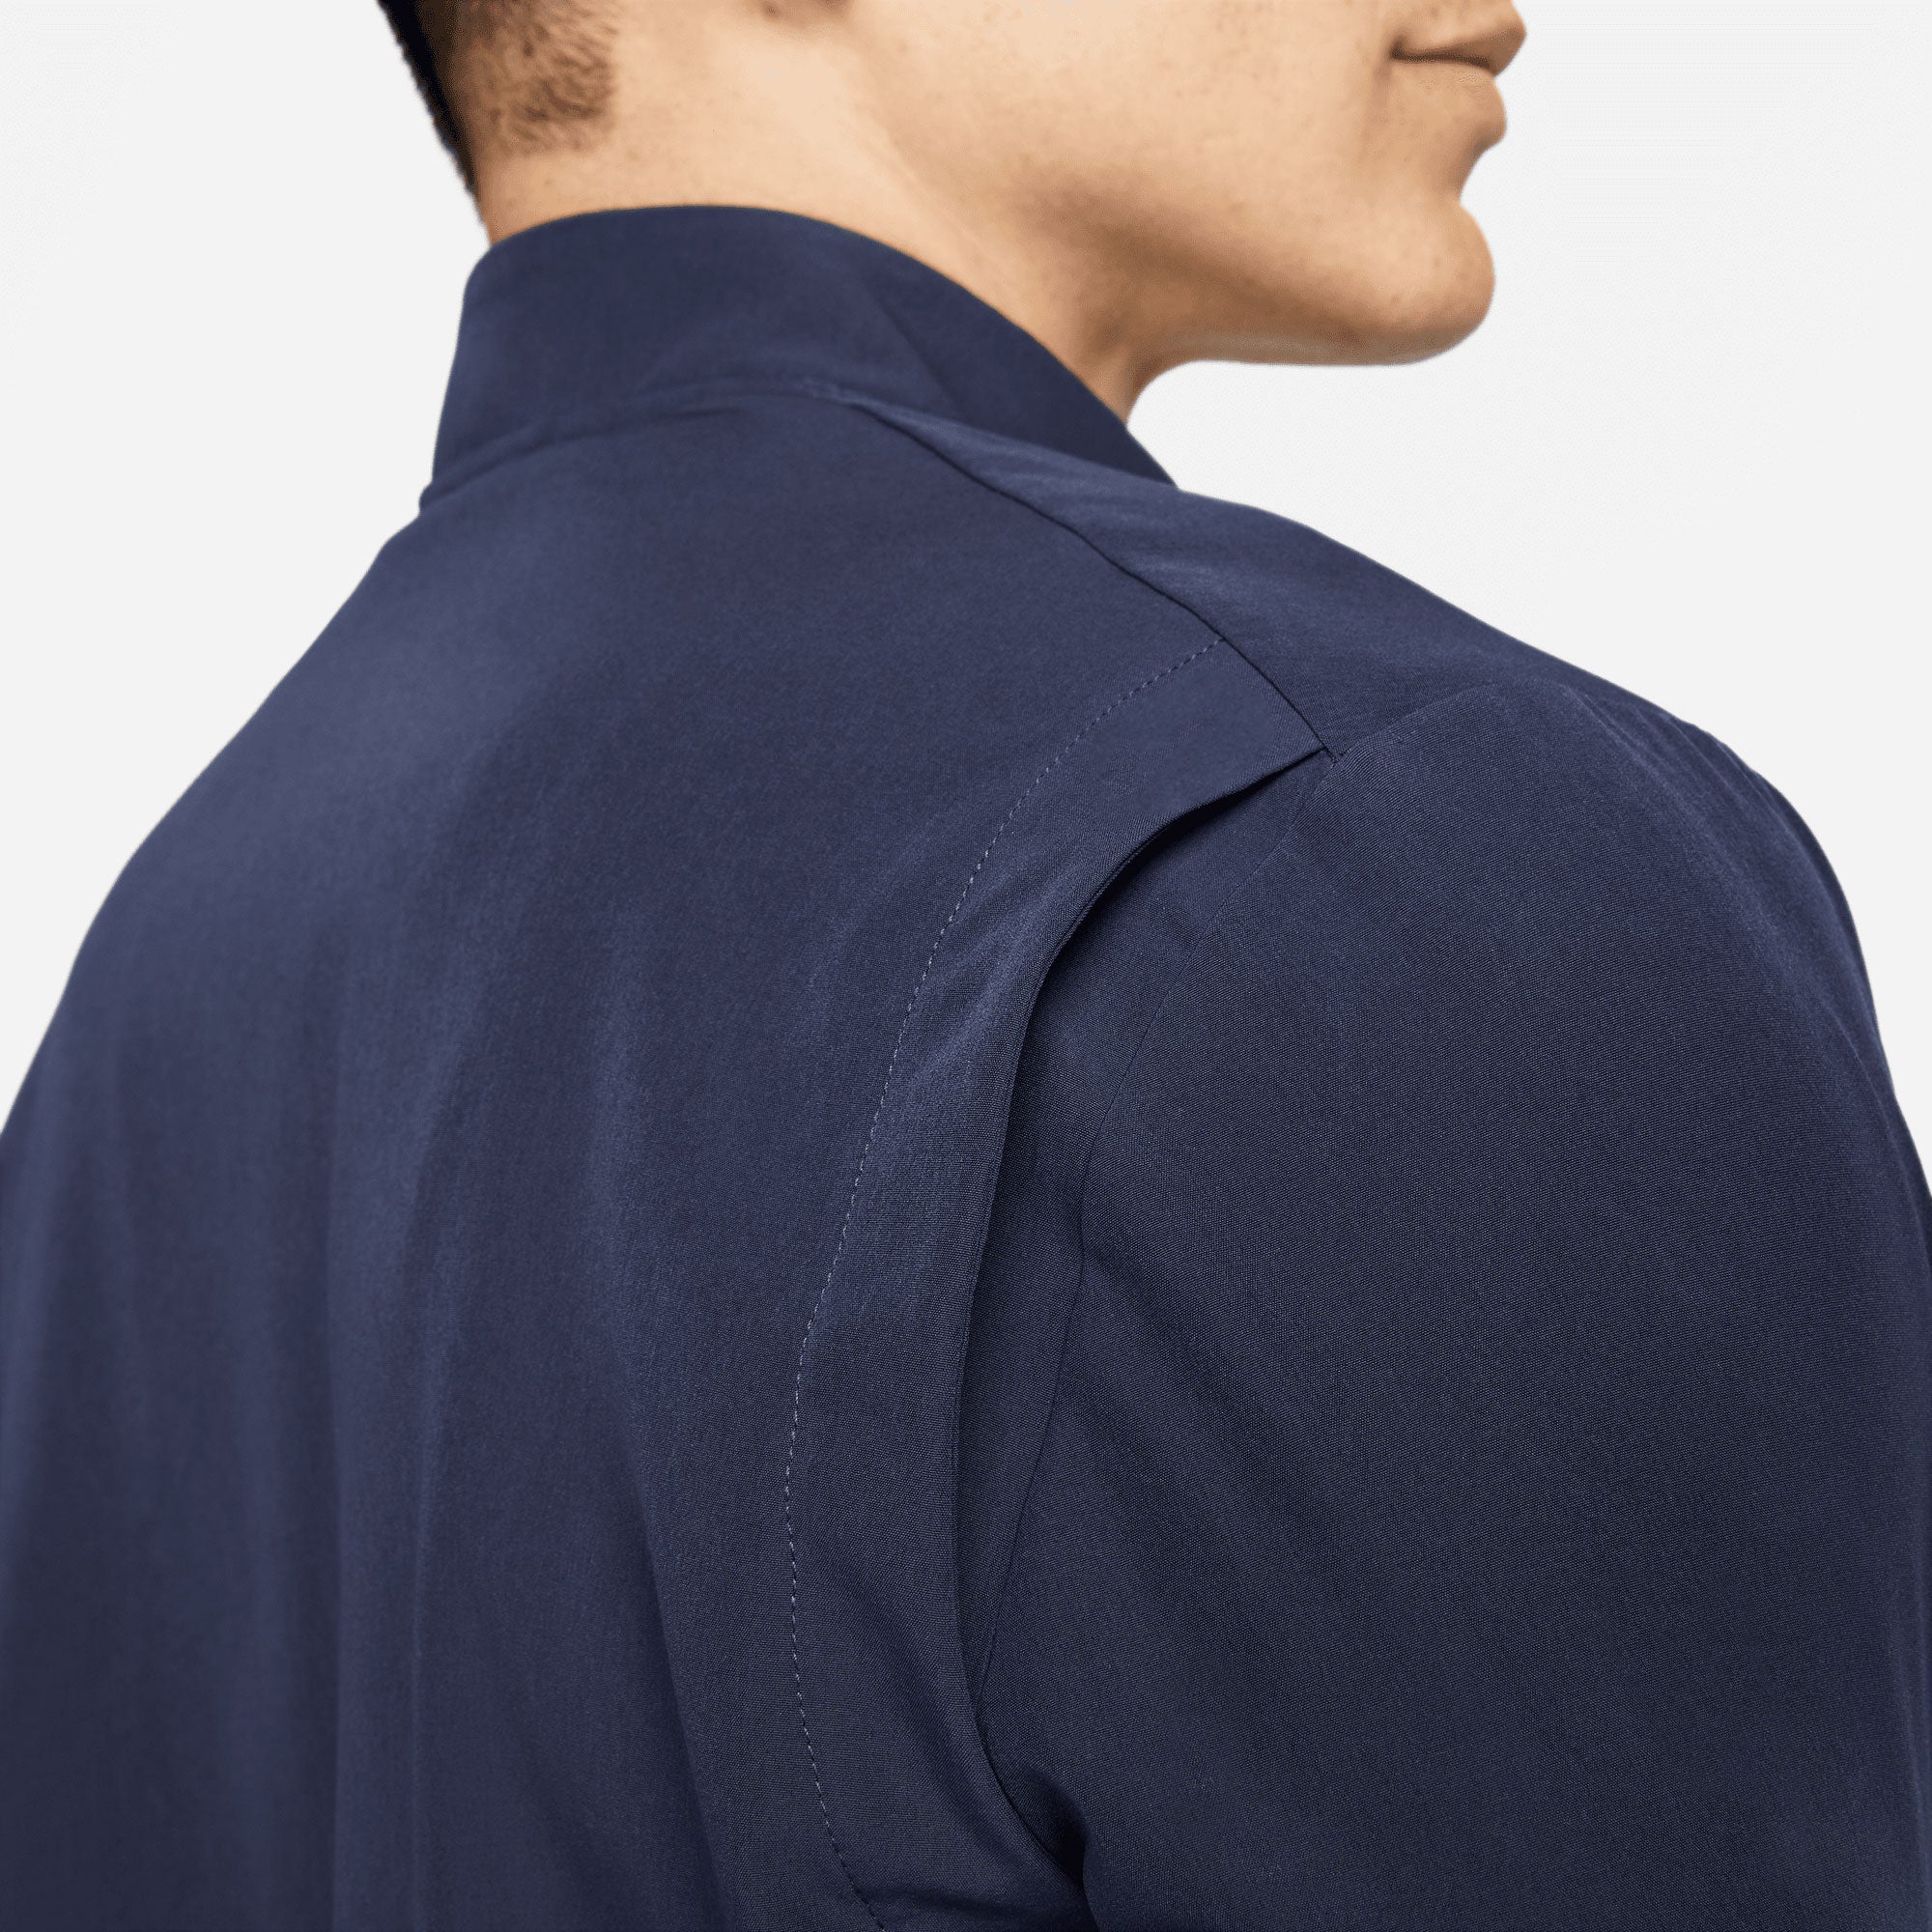 NikeCourt Advantage Men's Packable Tennis Jacket Blue (5)